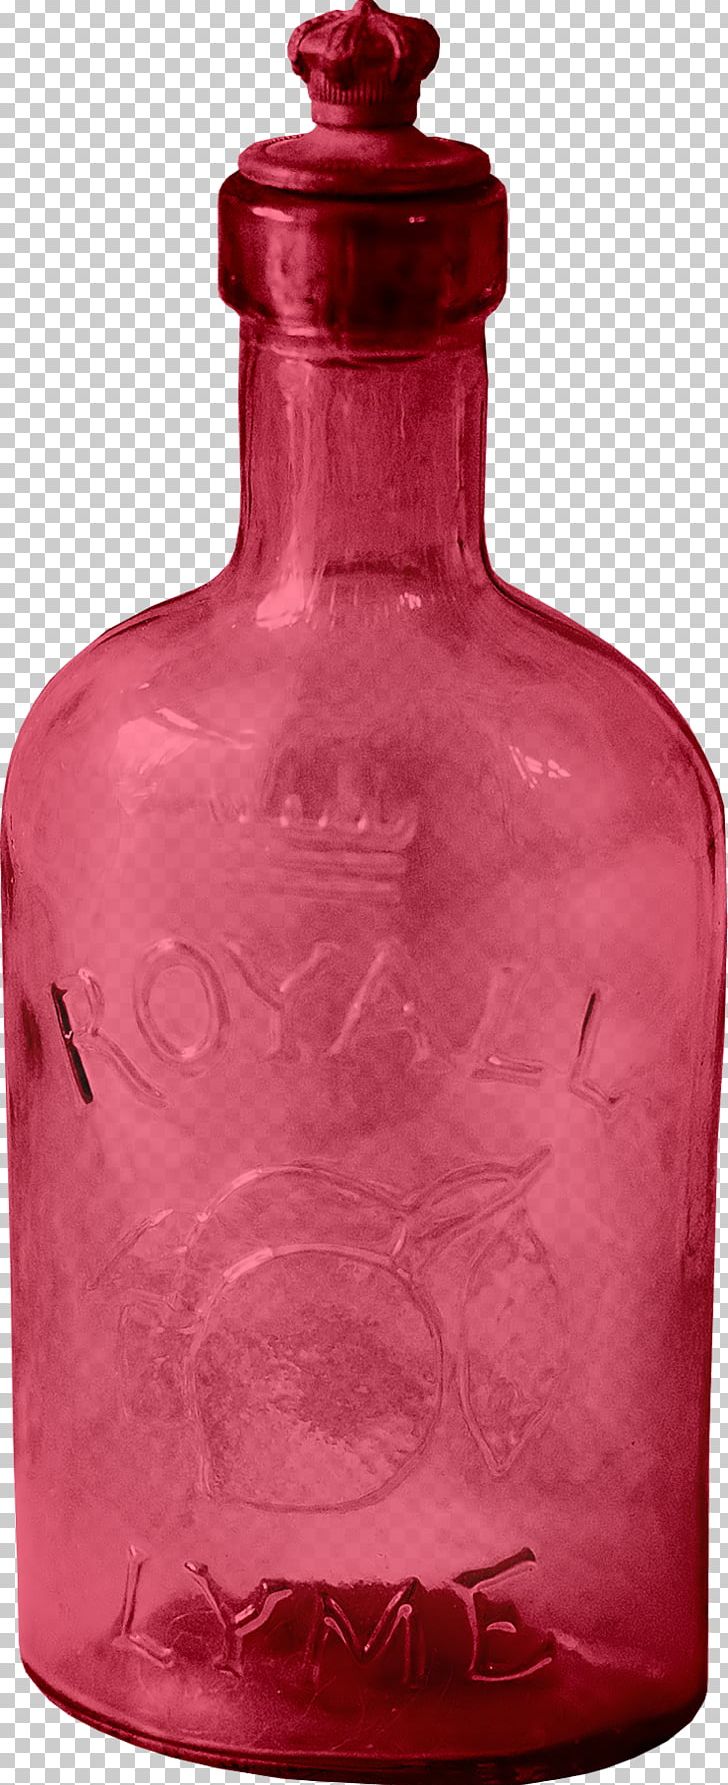 Glass Bottle Vase PNG, Clipart, Alcohol Bottle, Artifact, Barware, Bottle, Bottles Free PNG Download